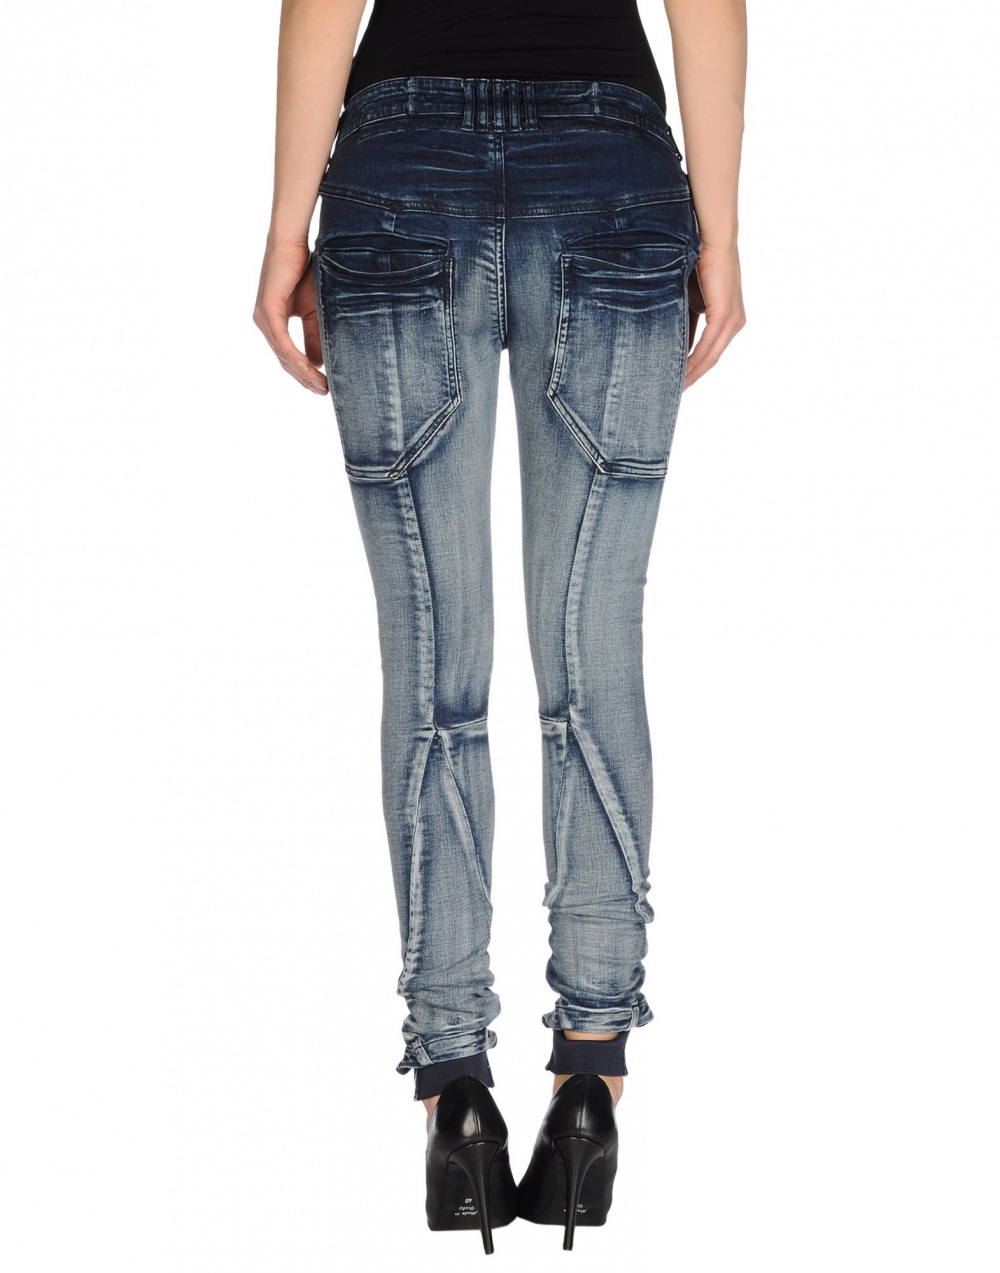 Новые эксцентричные джинсы JENA THEO на 46-48 размер (UK12).